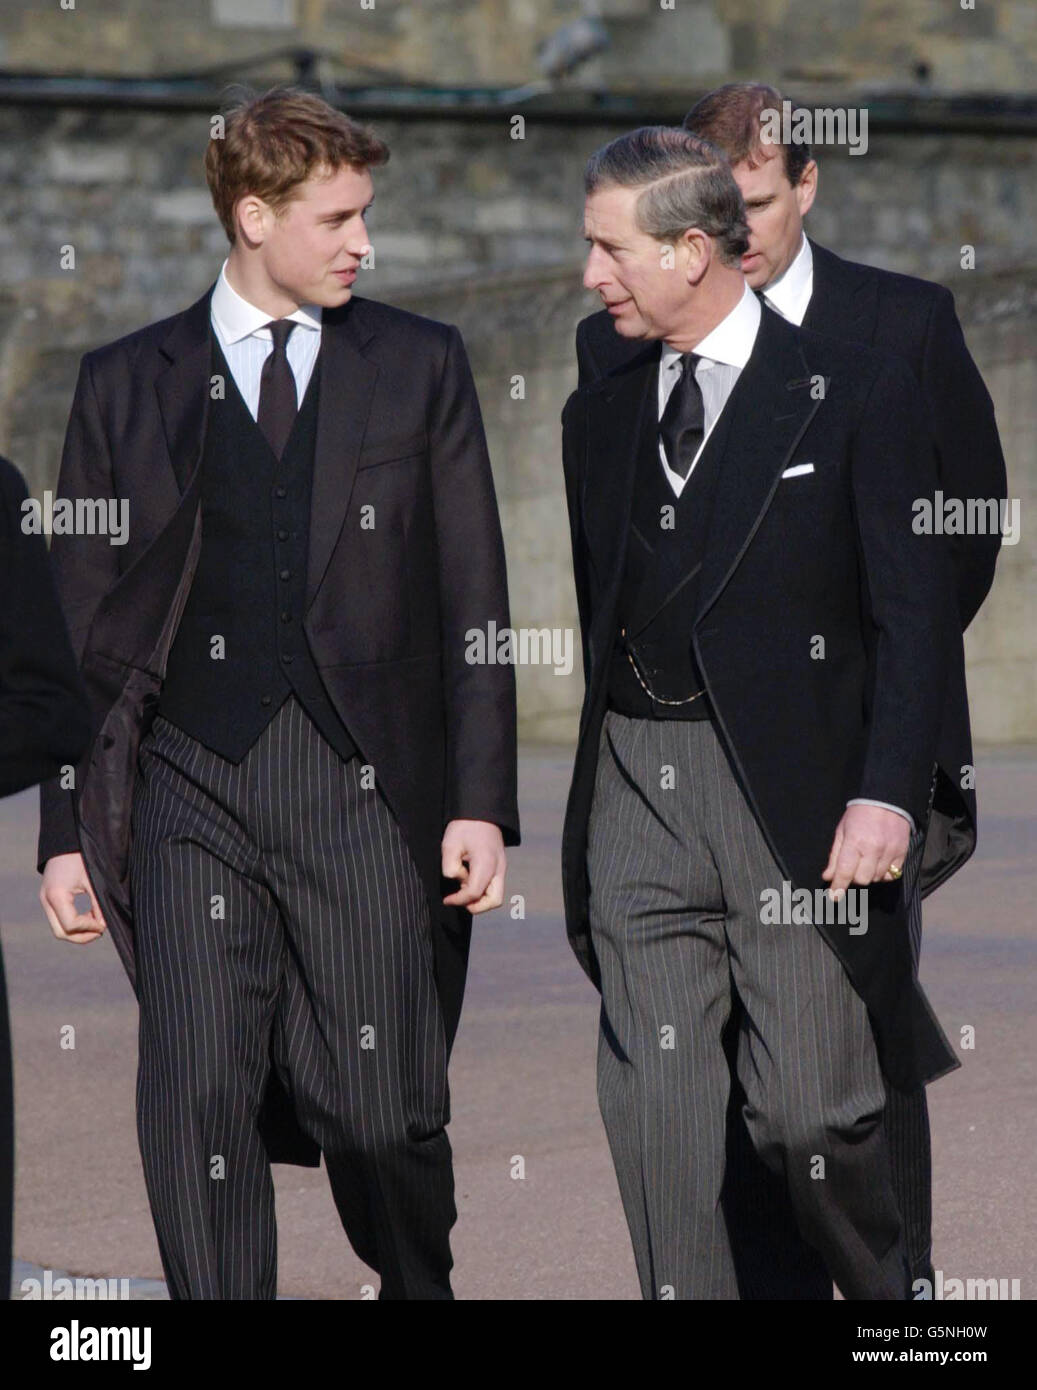 Duke Of Windsor Funeral Stock Photos & Duke Of Windsor ...